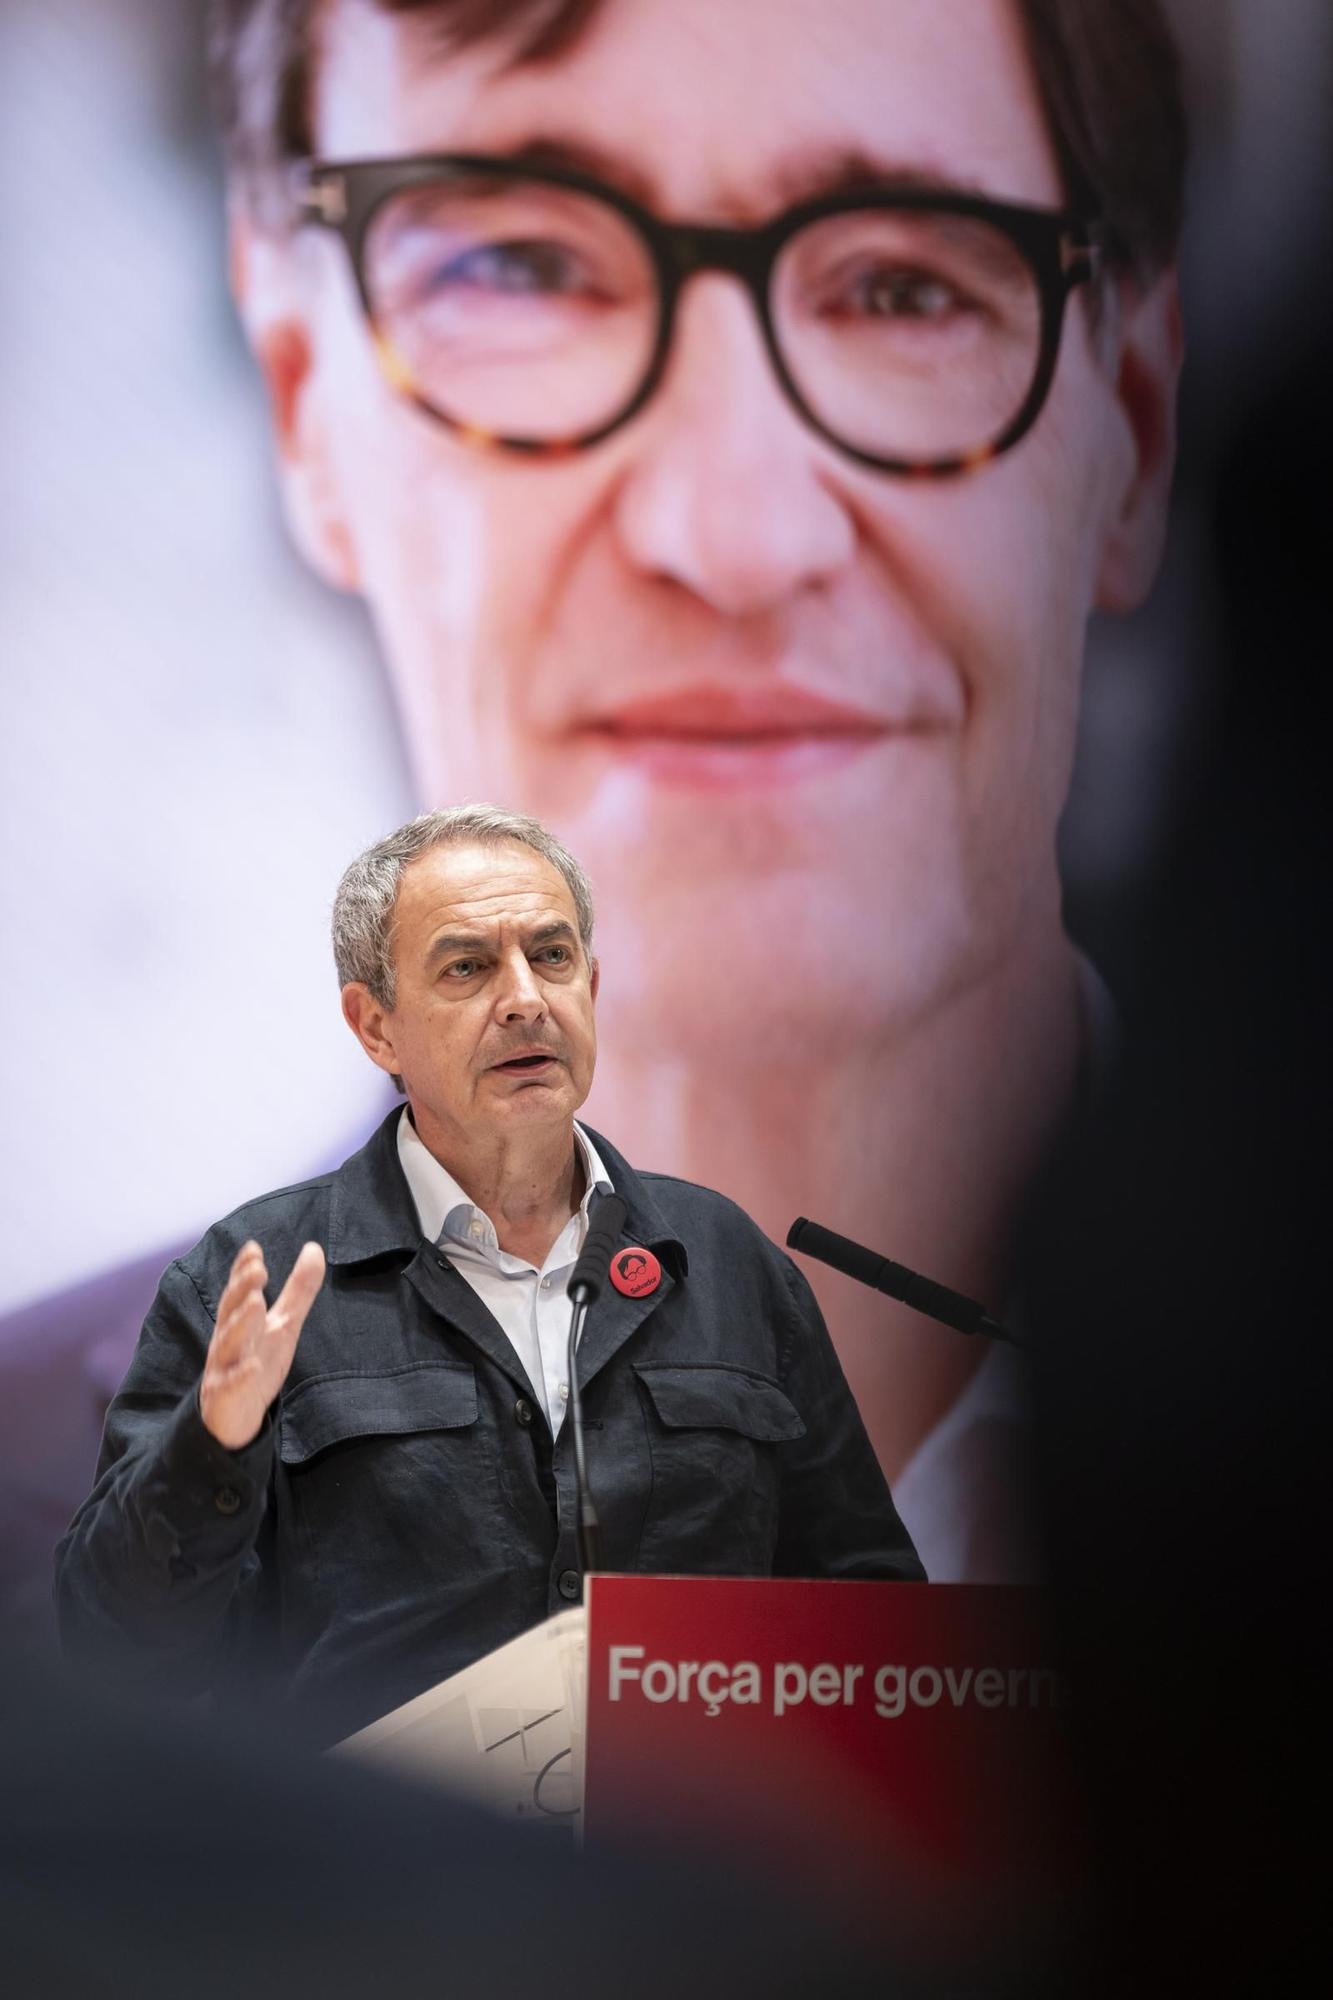 Les imatges del míting del PSC amb Salvador Illa i José Luís Rodríguez Zapatero a Girona